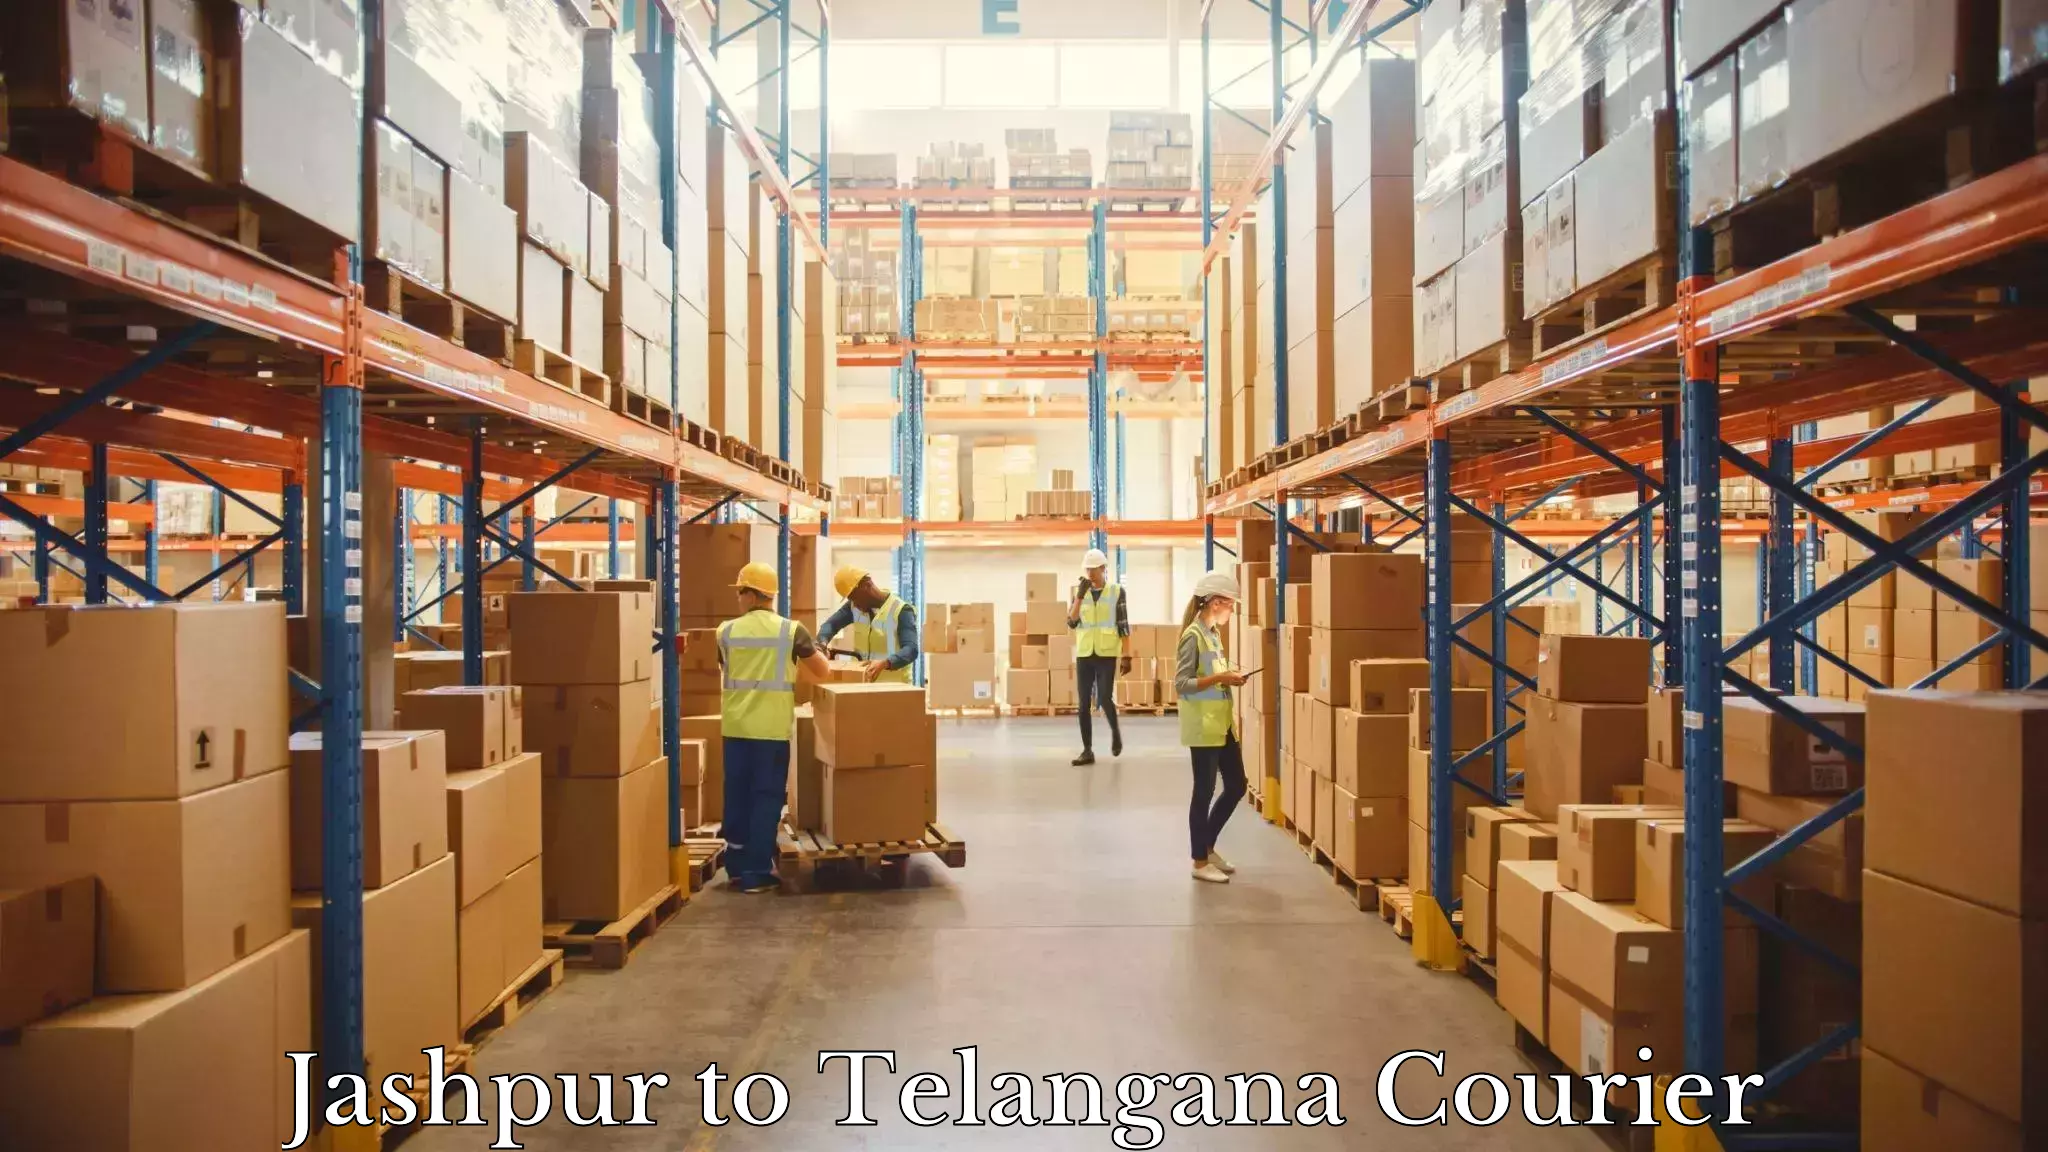 Package delivery network Jashpur to Veenavanka